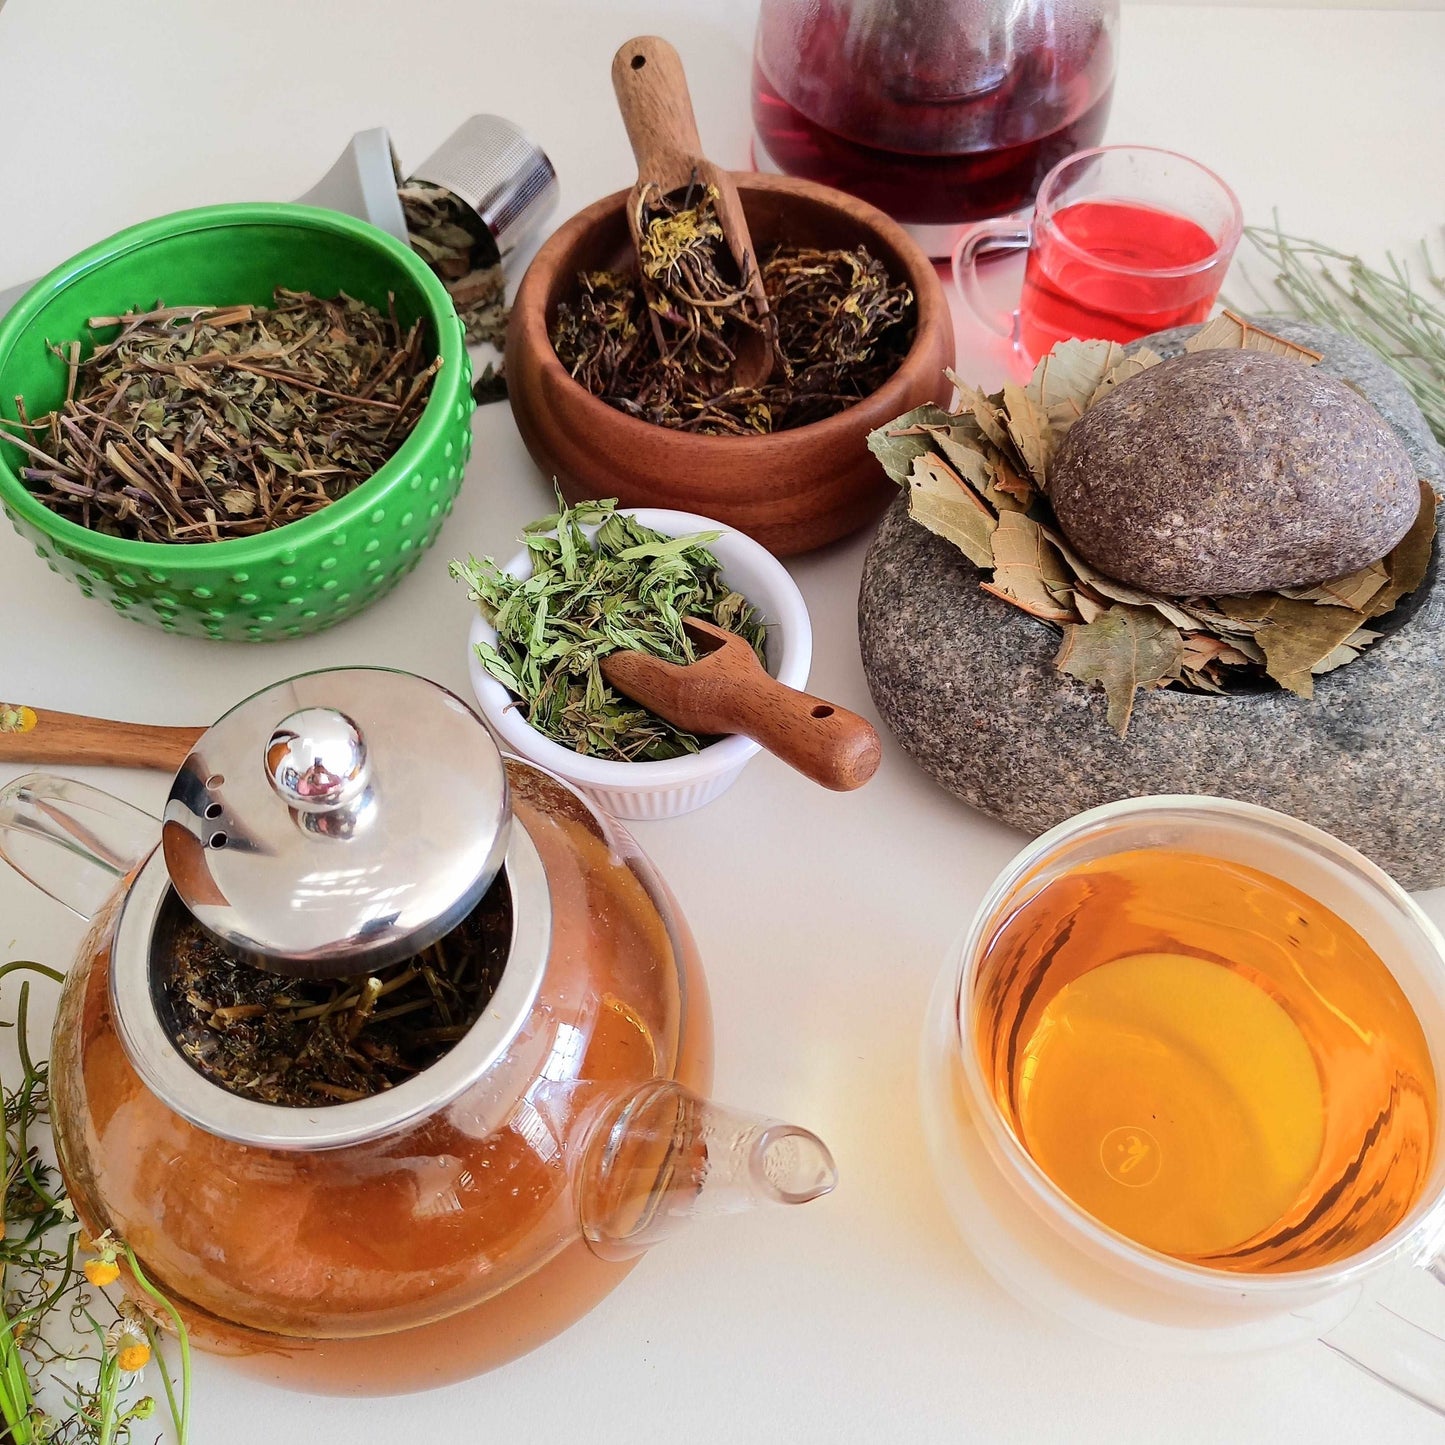 Boldo Herbal Tea Leaves - 90g Value Pack - Herbal Infusion Tea